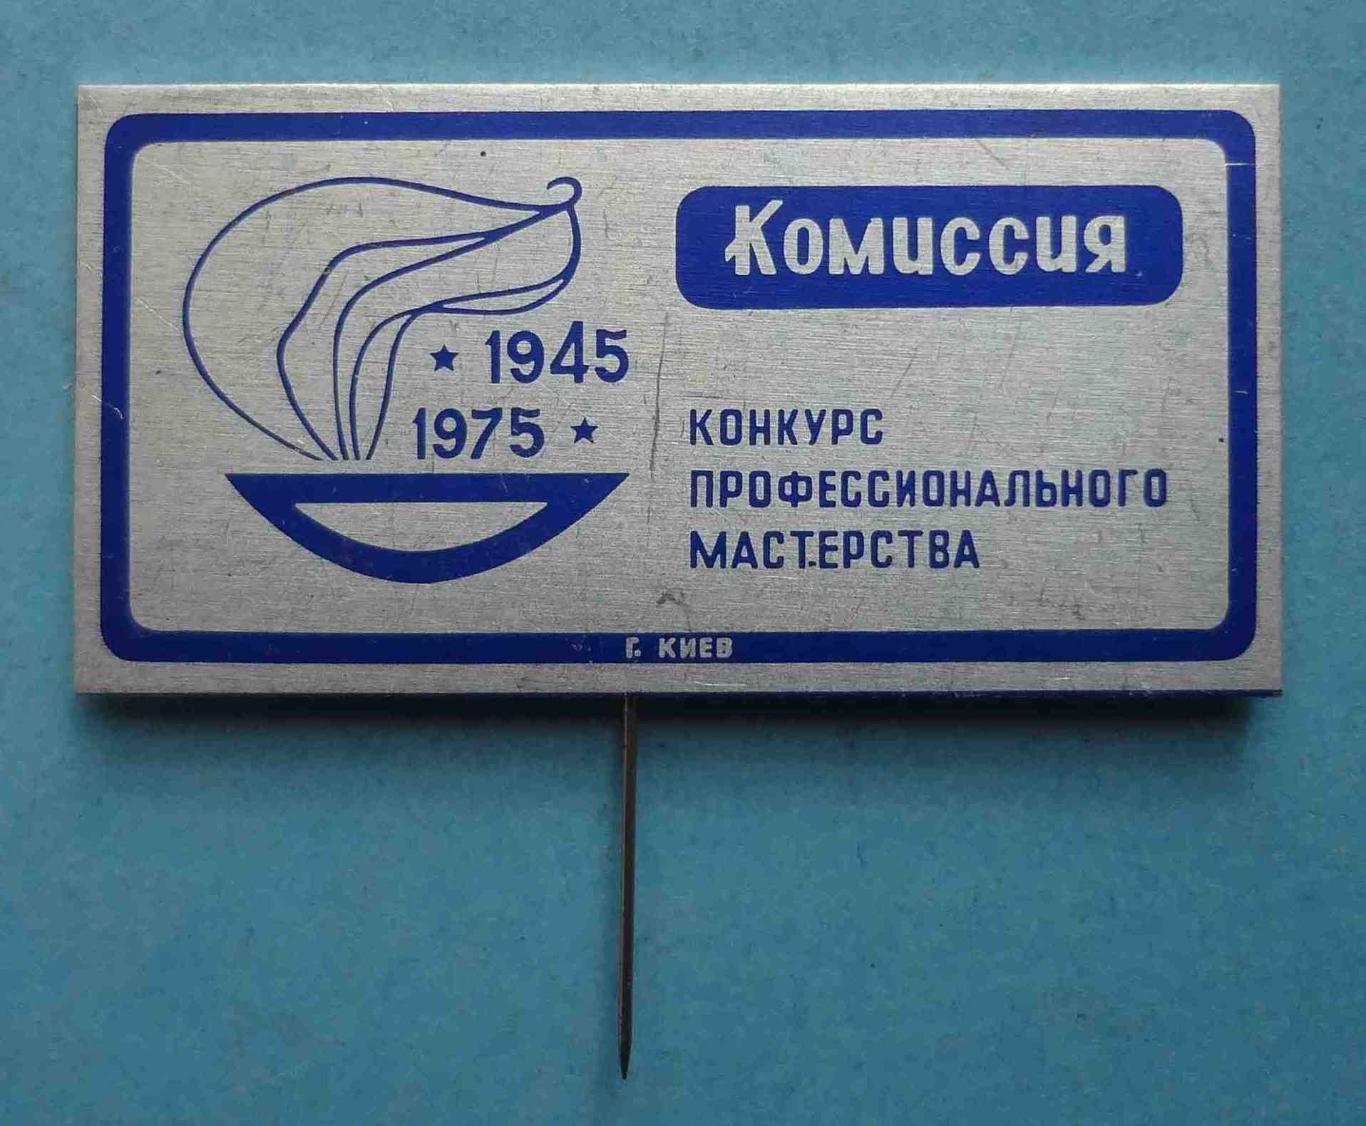 30 лет Конкурс профессионального мастерства Киев 1945-1975 Комиссия (39)